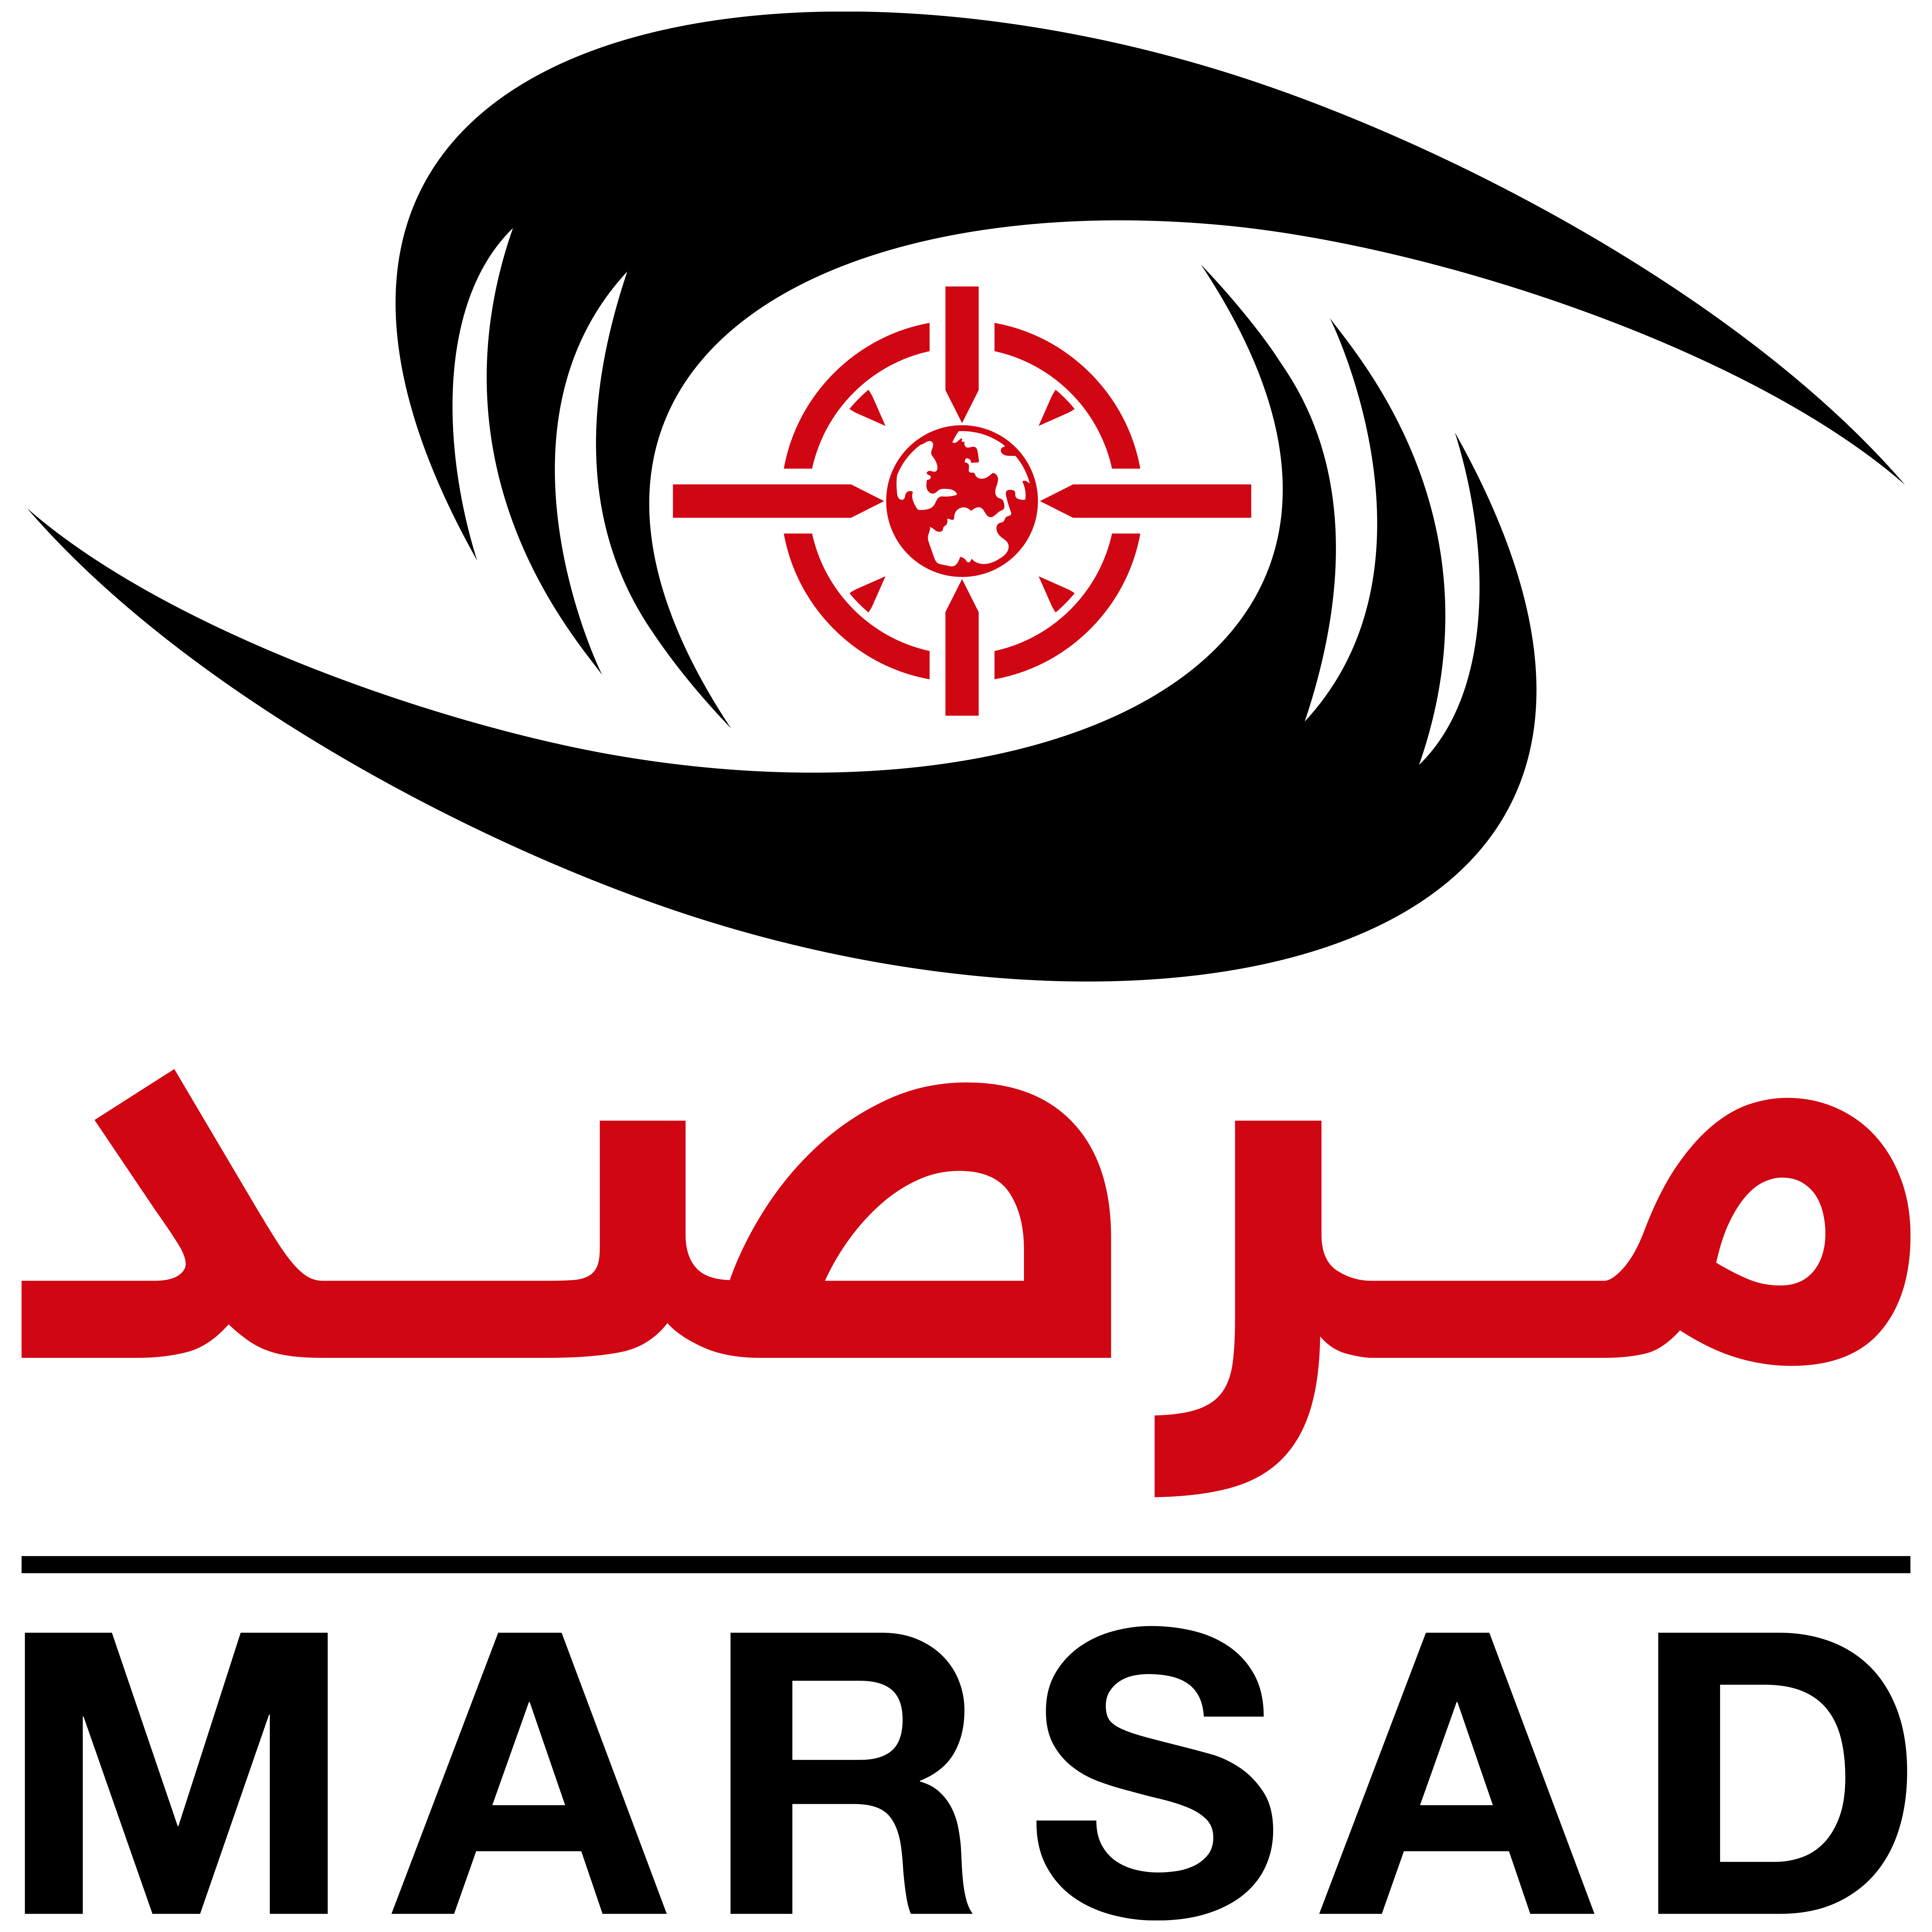 شعار رئاسة امن الدولة